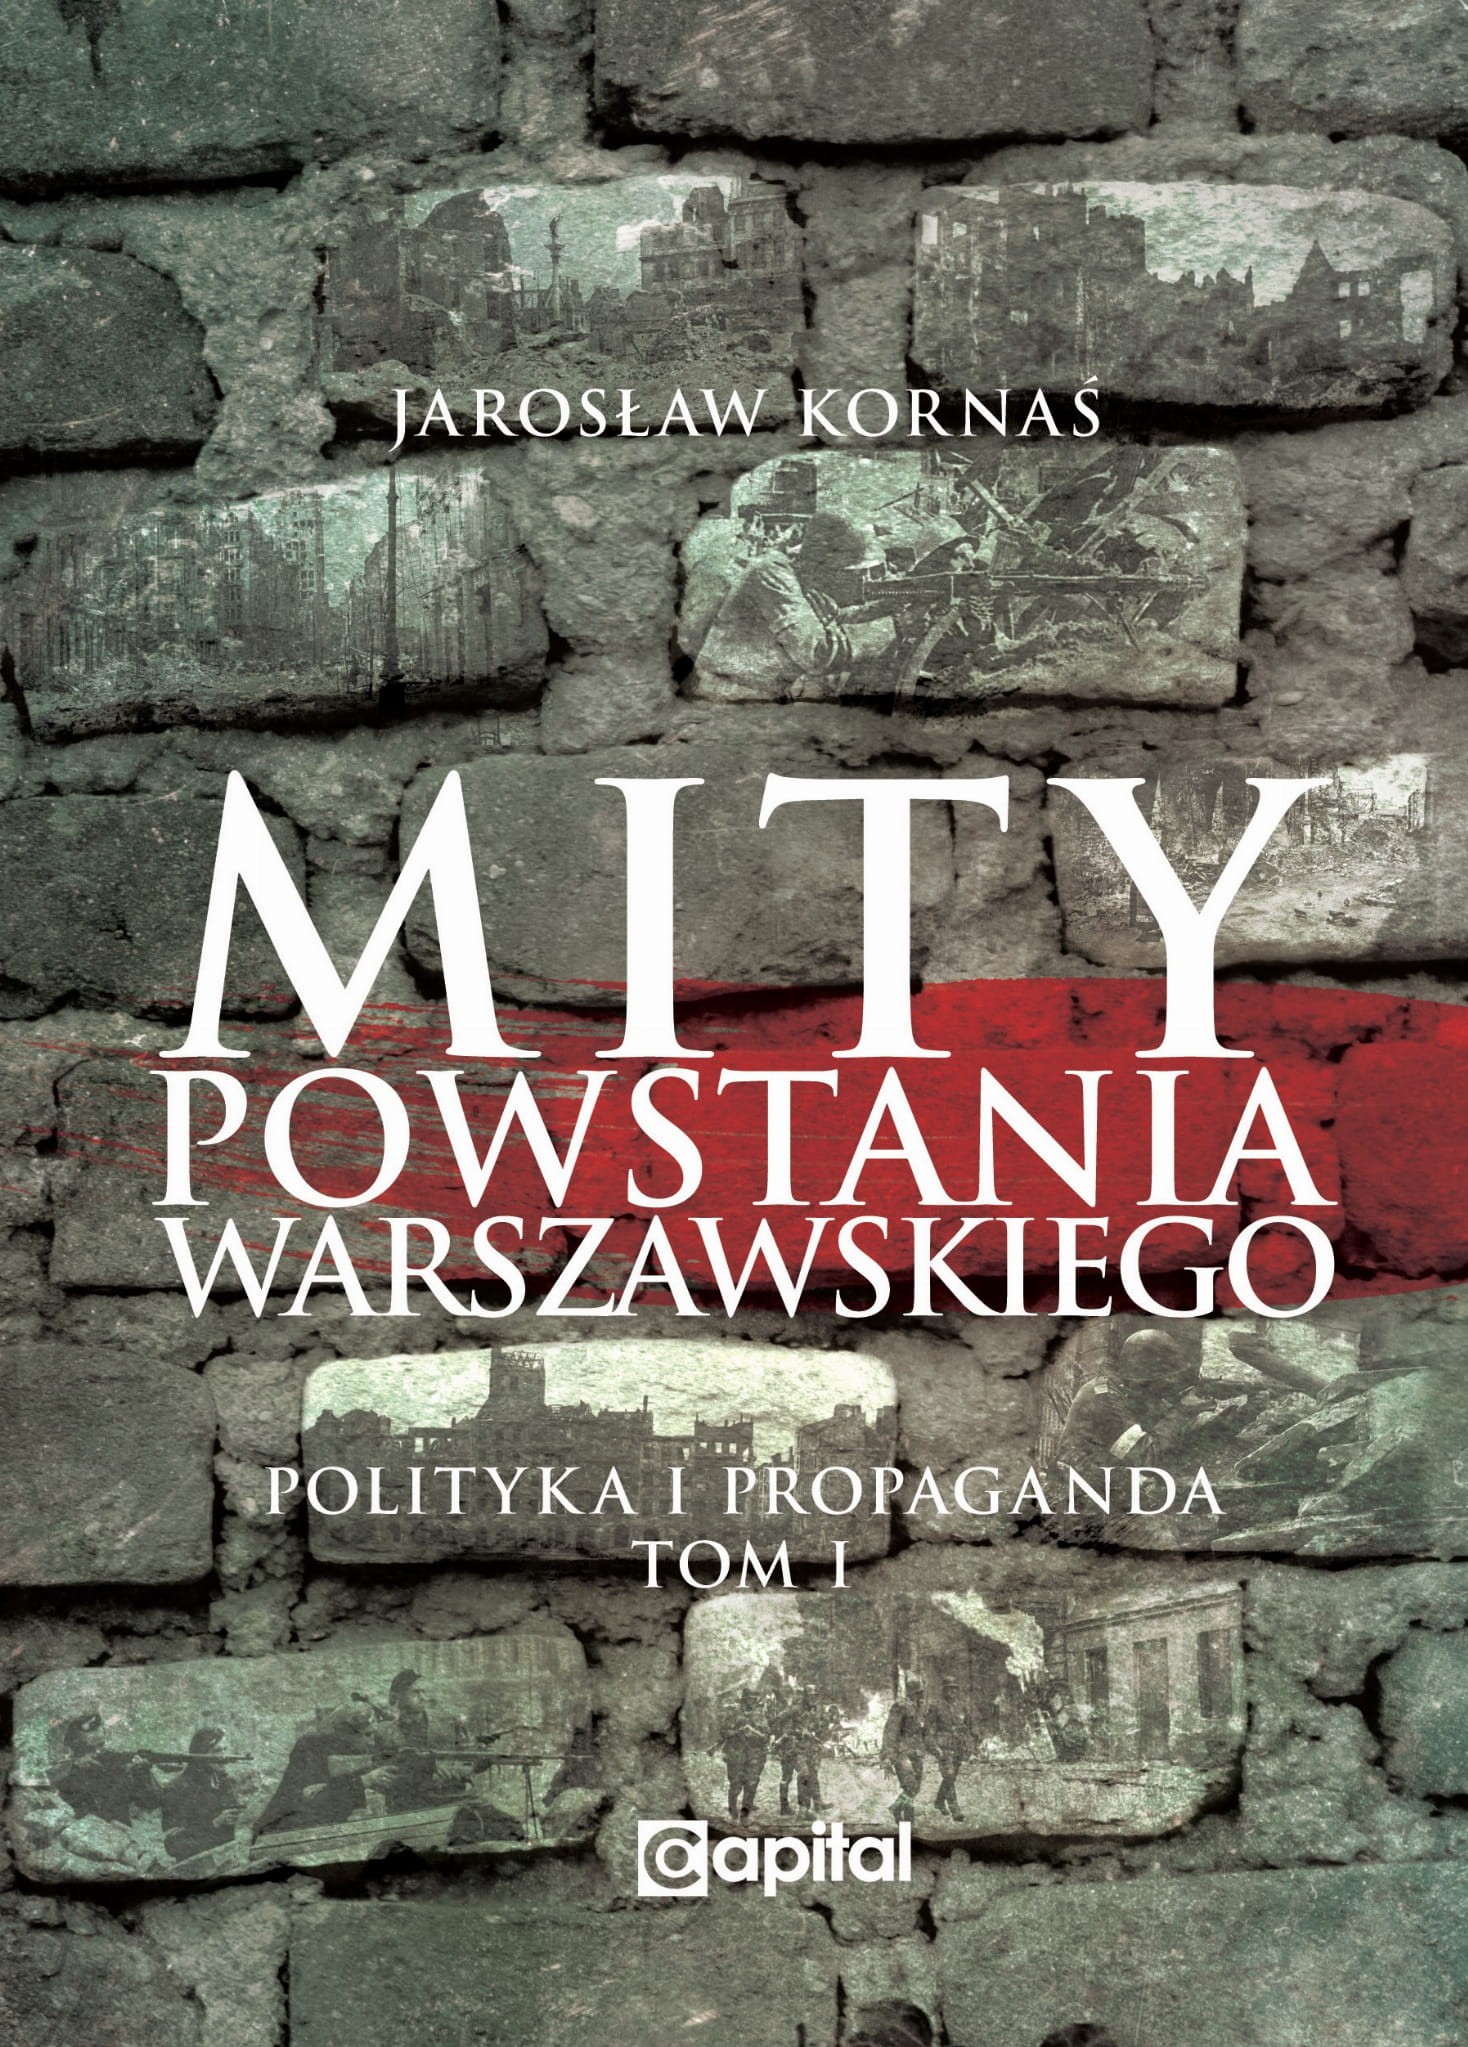 Mity Powstania Warszawskiego T.1 Polityka i propaganda (J.Kornaś)